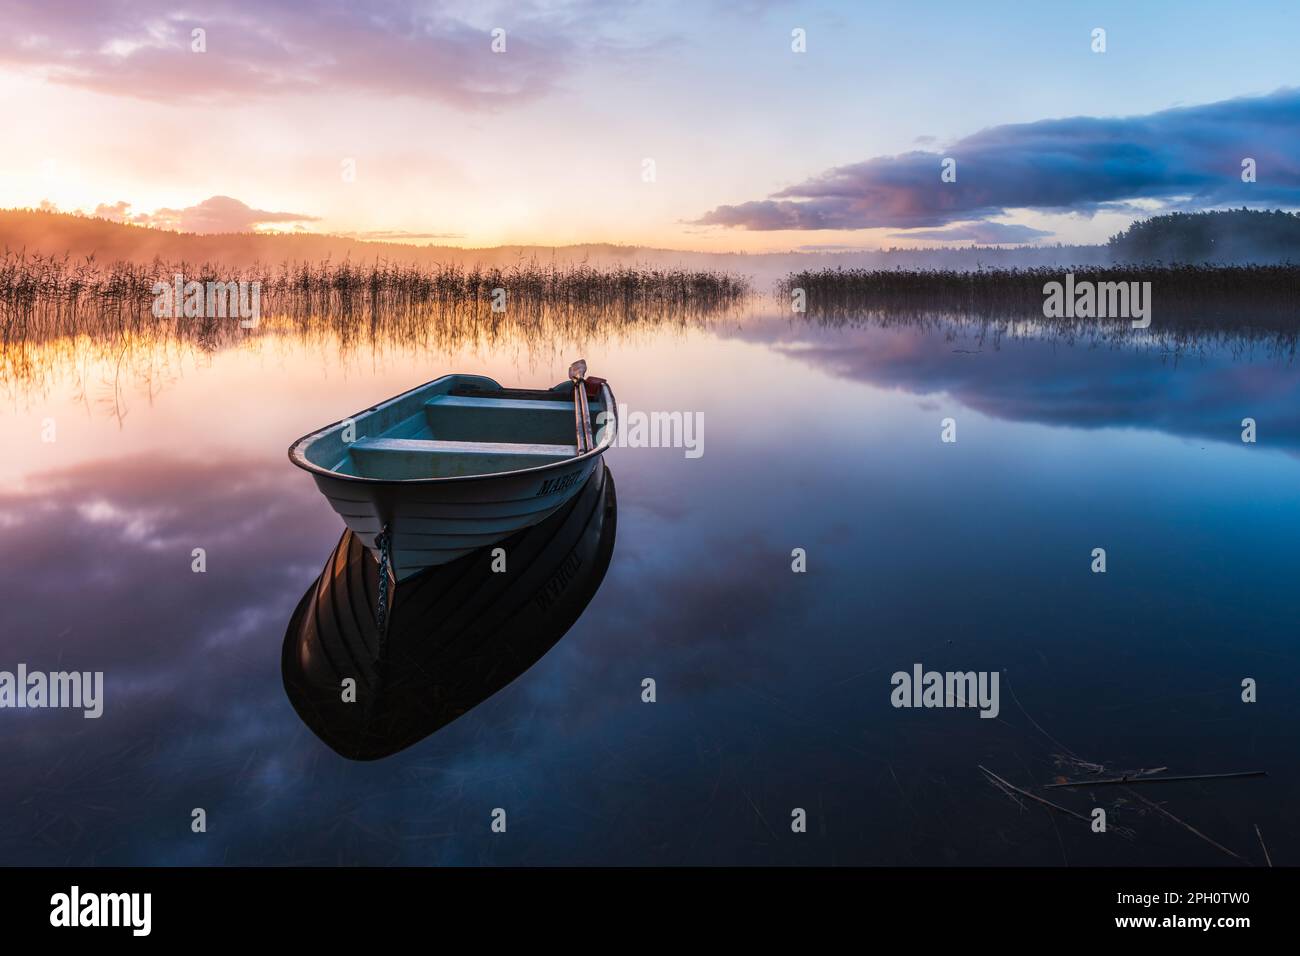 Eine ruhige Morgendämmerung mit einem Ruderboot, das von der ruhigen Oberfläche der Seen reflektiert, umgeben von Schönheit der Natur und einem rosa Himmel. Stockfoto